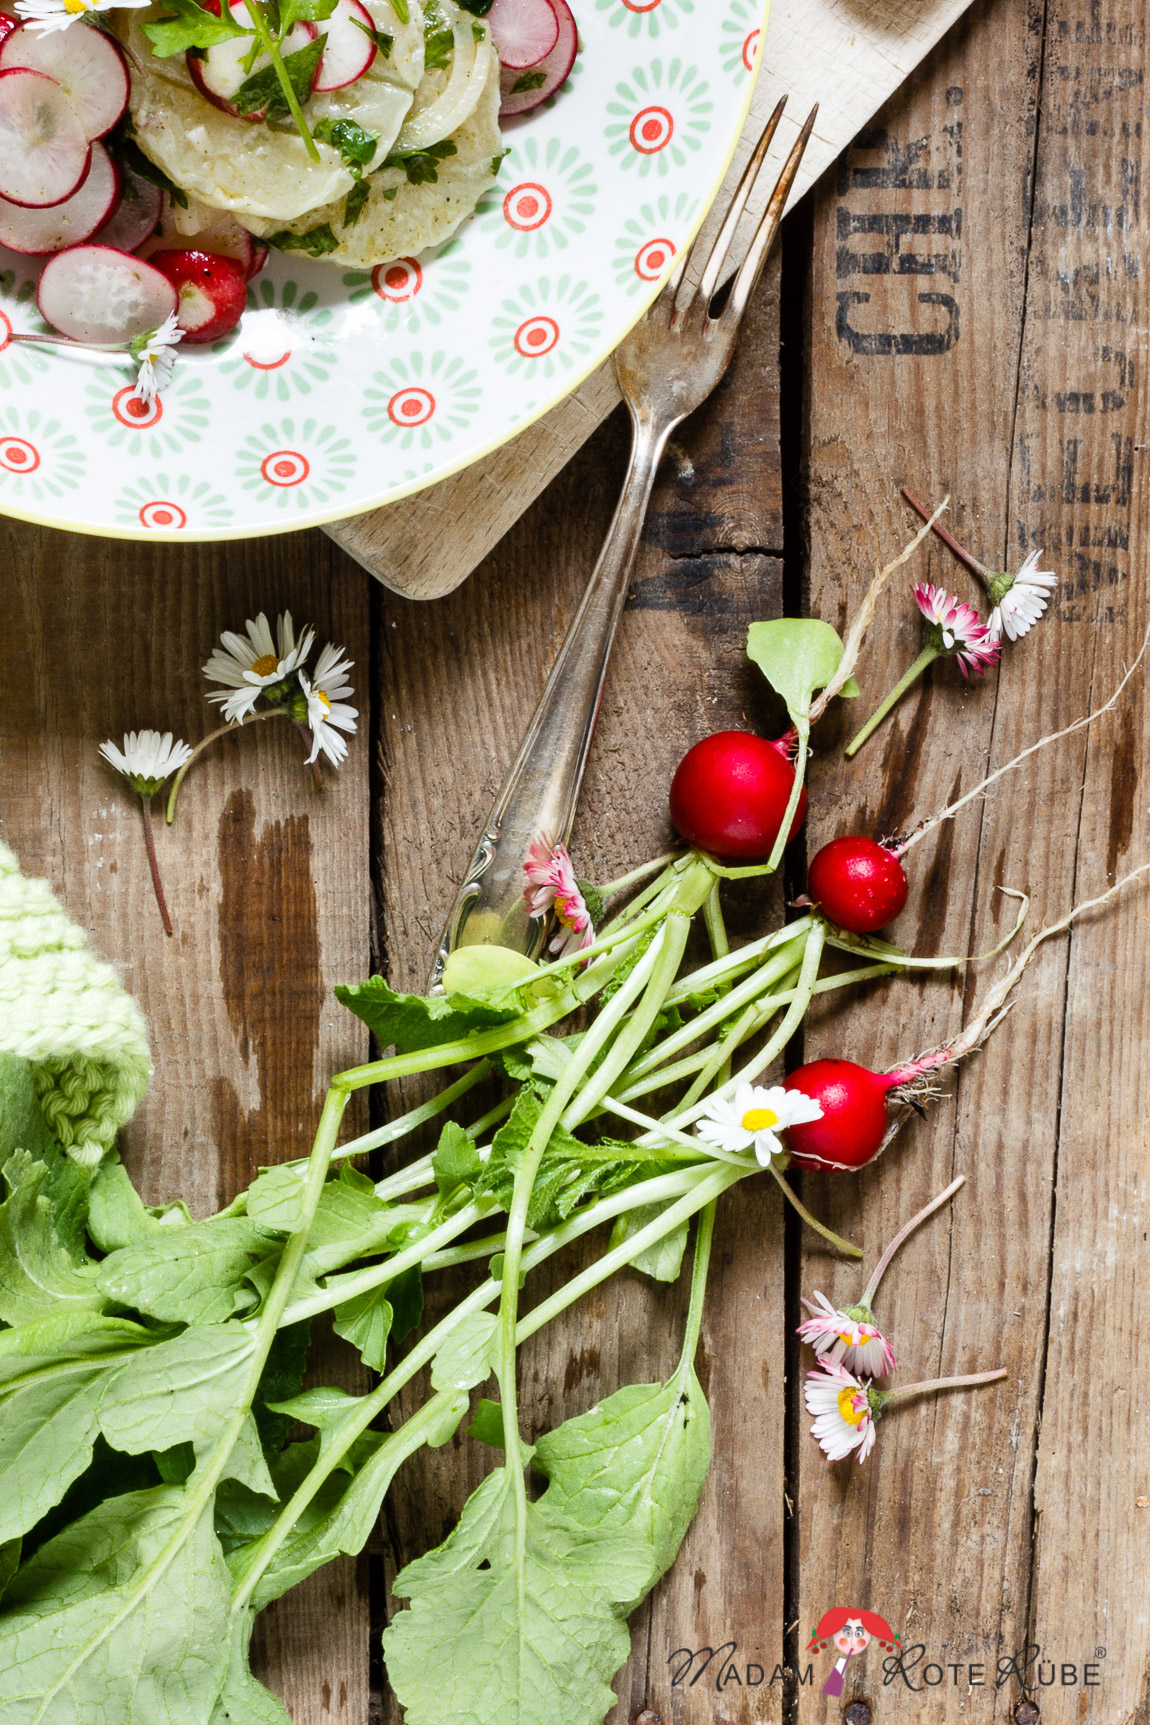 Madam Rote Rübe - Radieschensalat mit Harzer Käse und Gänseblümchen